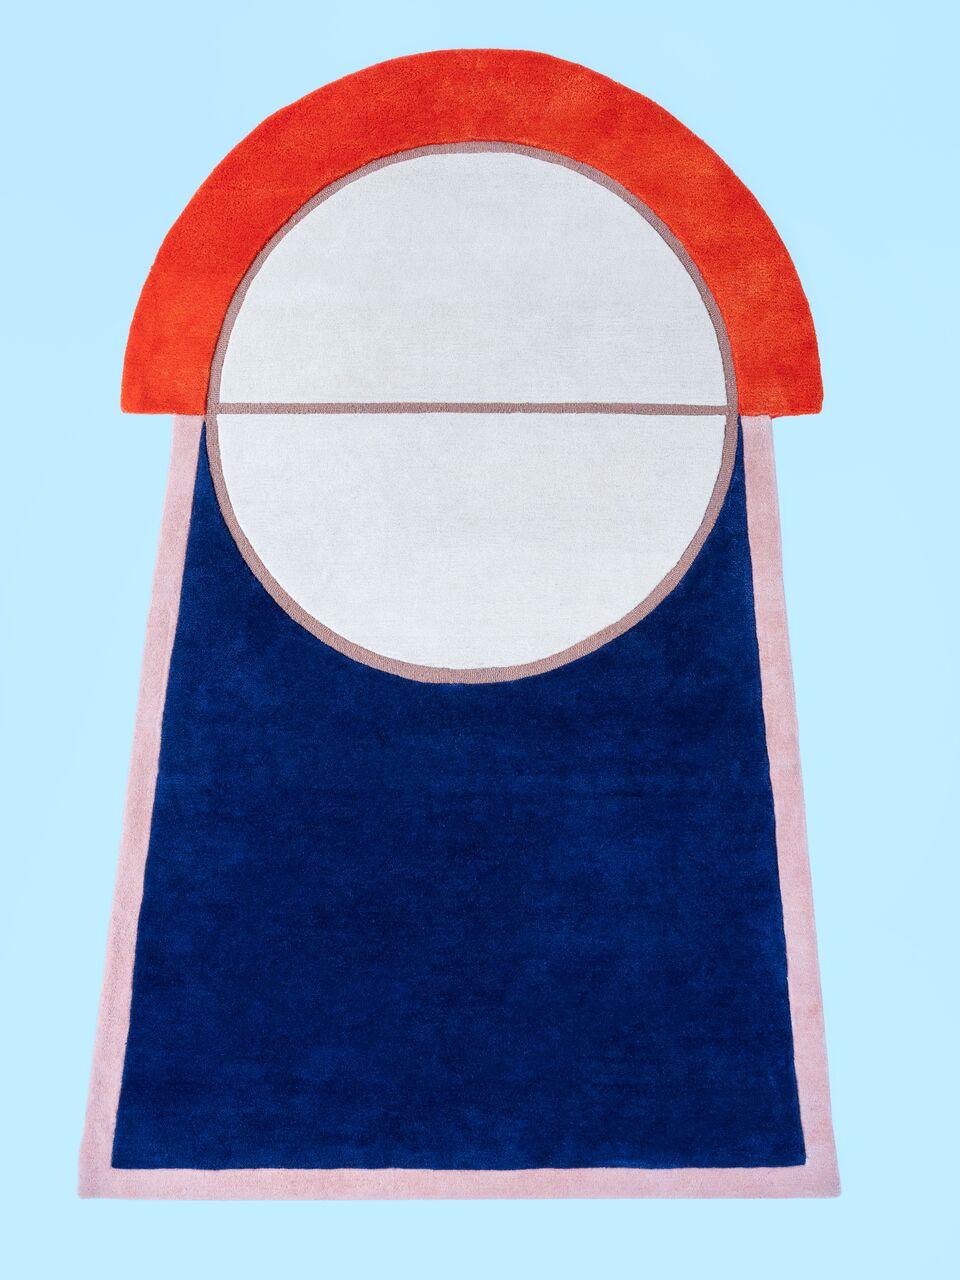 Indien Tapis « Court Series » Key 1 de Pieces, tapis sportif coloré rouge marine tufté à la main en vente